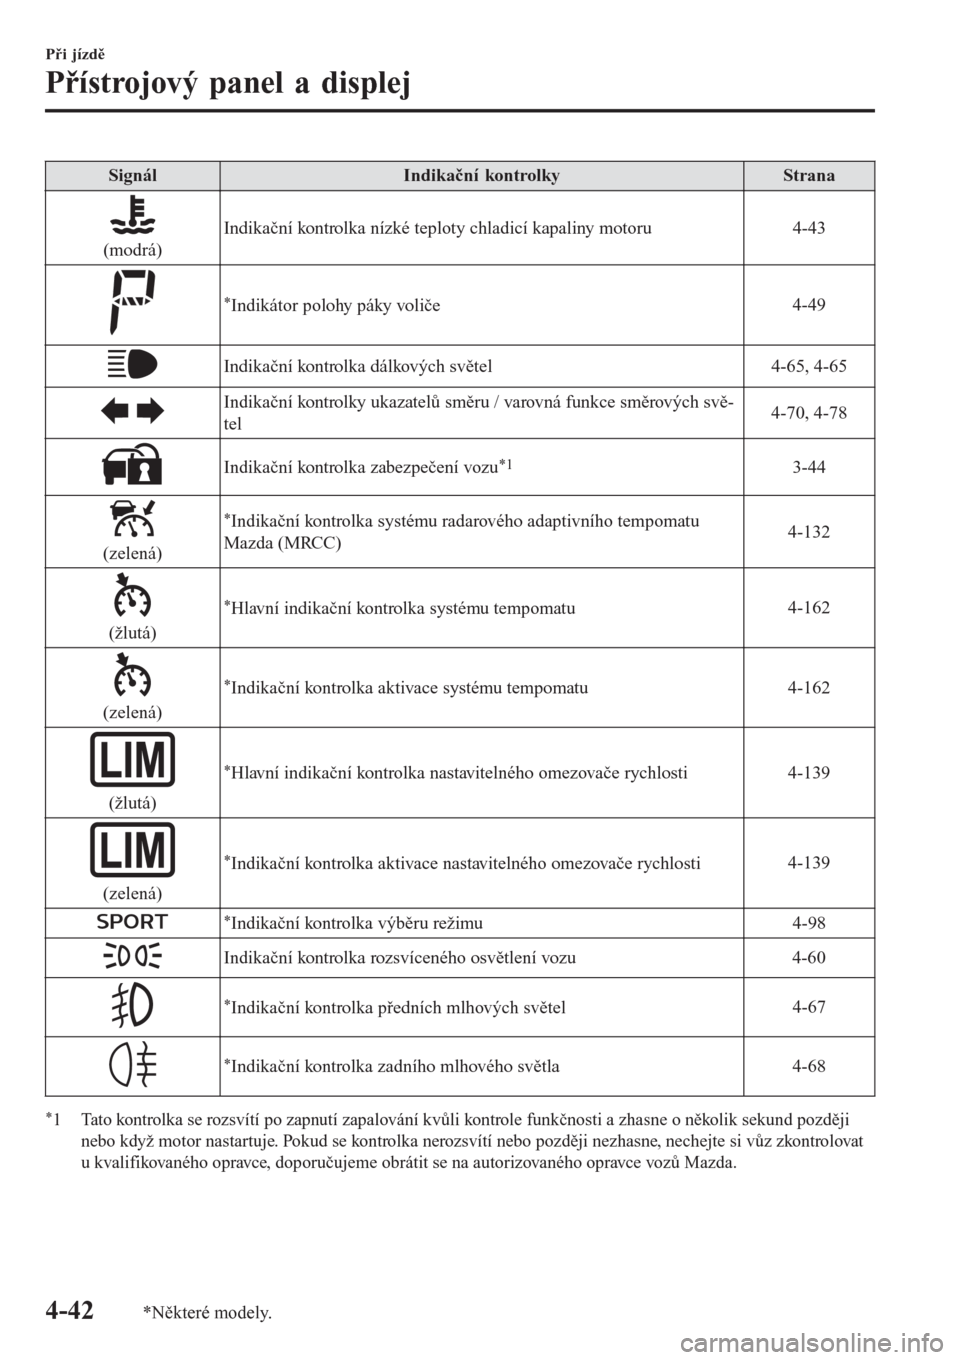 MAZDA MODEL CX-3 2016  Návod k obsluze (in Czech) SignálIndikační kontrolkyStrana
(modrá)Indikační kontrolka nízké teploty chladicí kapaliny motoru 4-43
*Indikátor polohy páky voliče4-49
Indikační kontrolka dálkových světel 4-65, 4-6